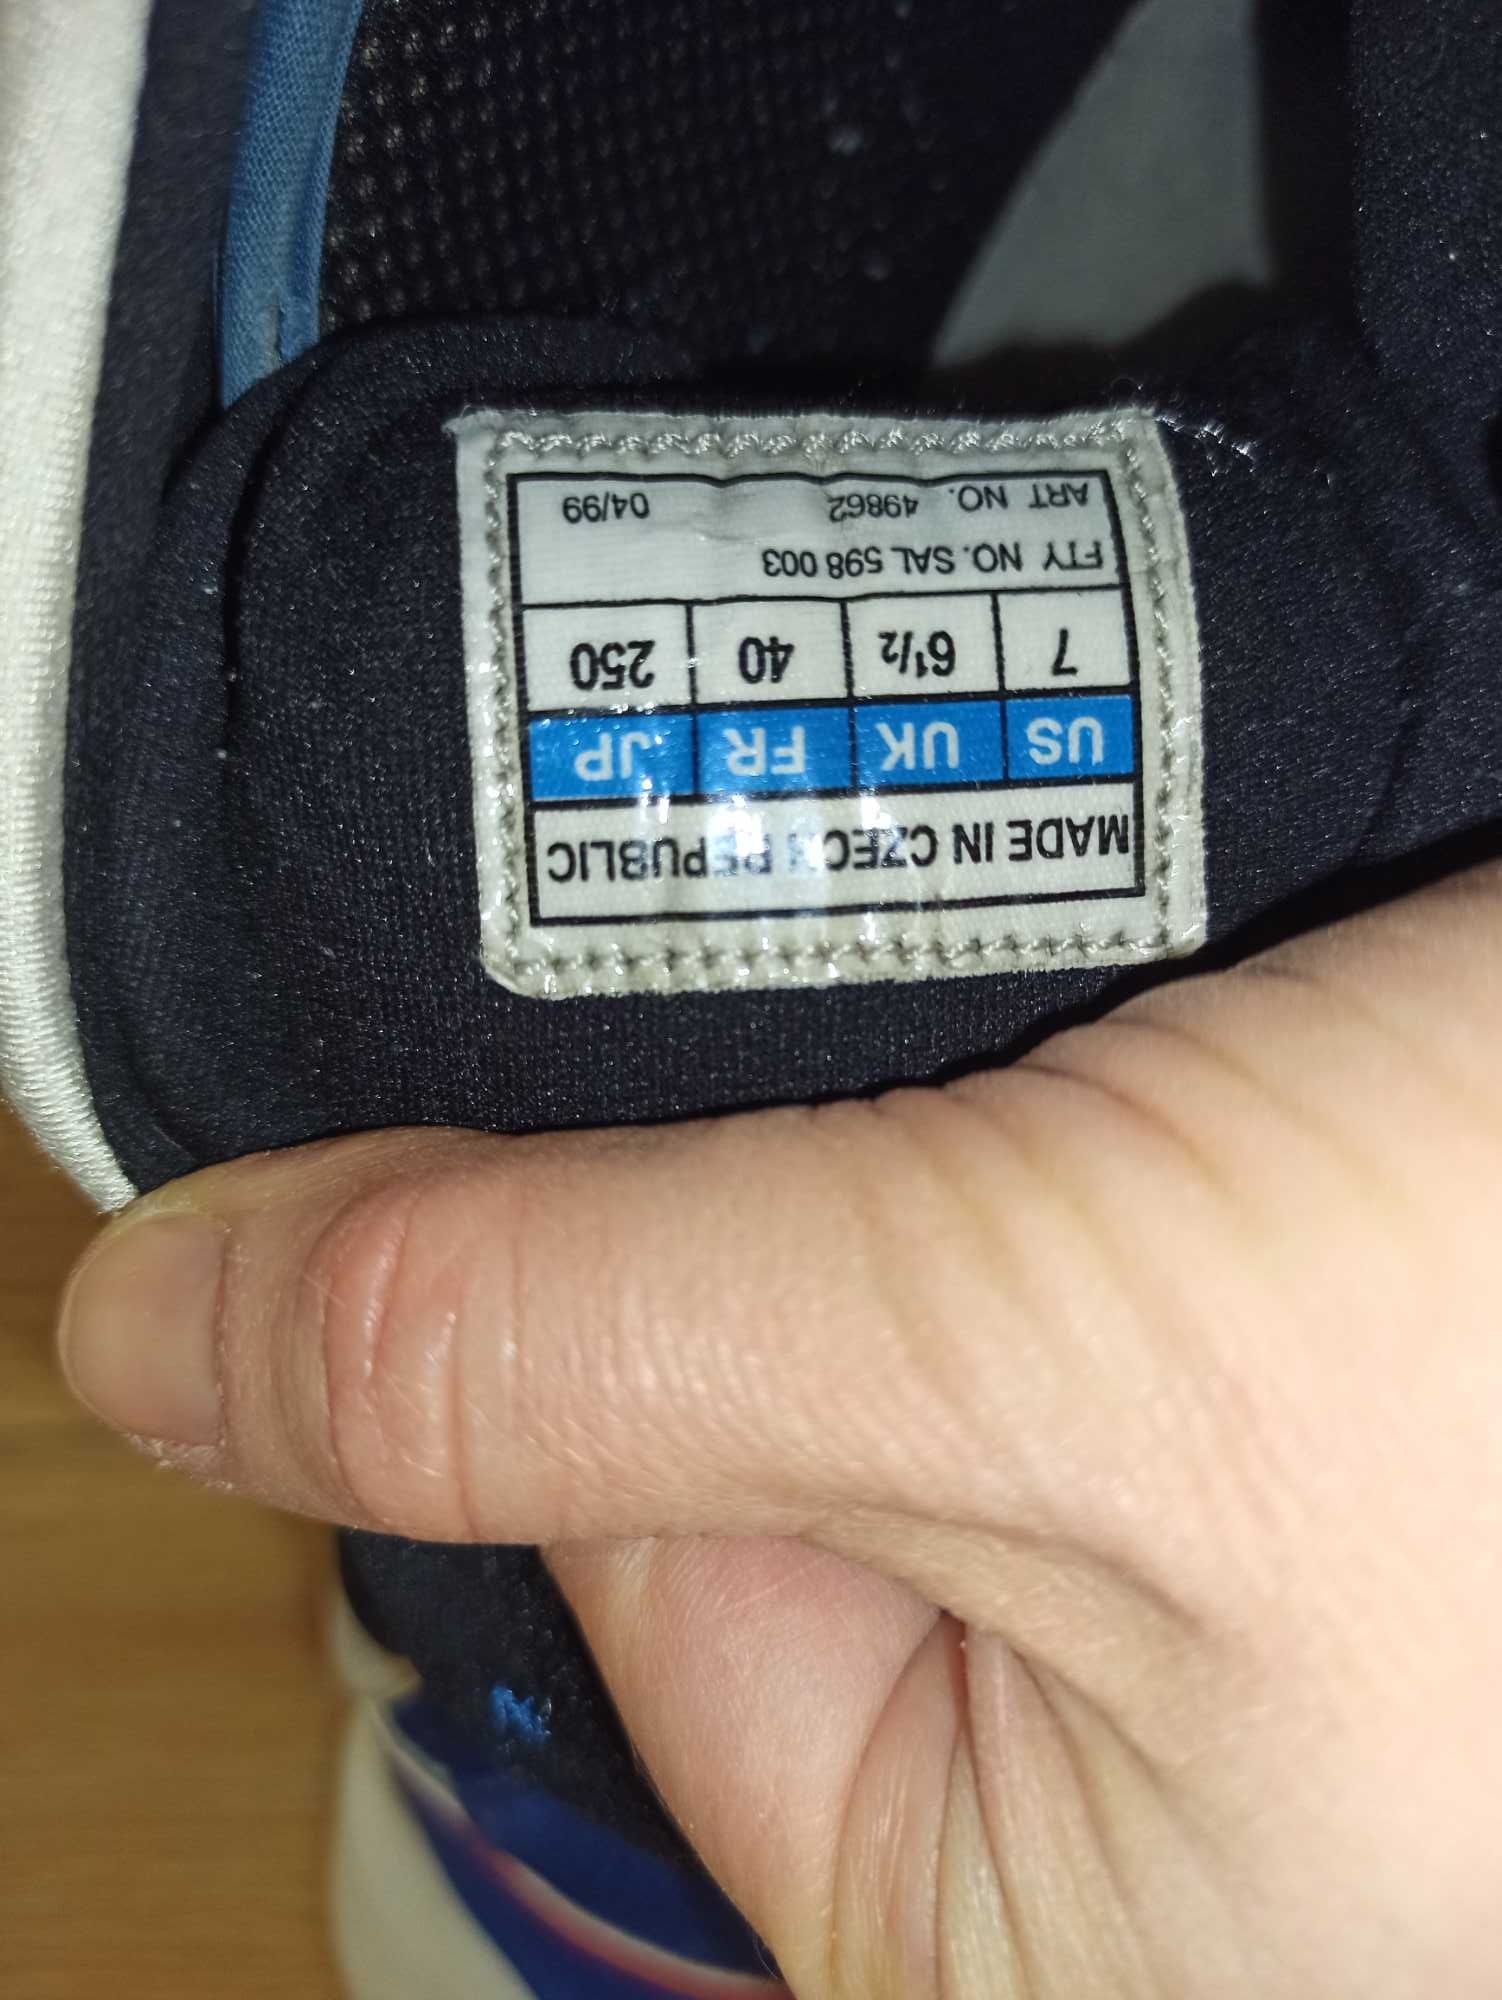 Ботинки Adidas для беговых лыж,25.5-26 см, sns